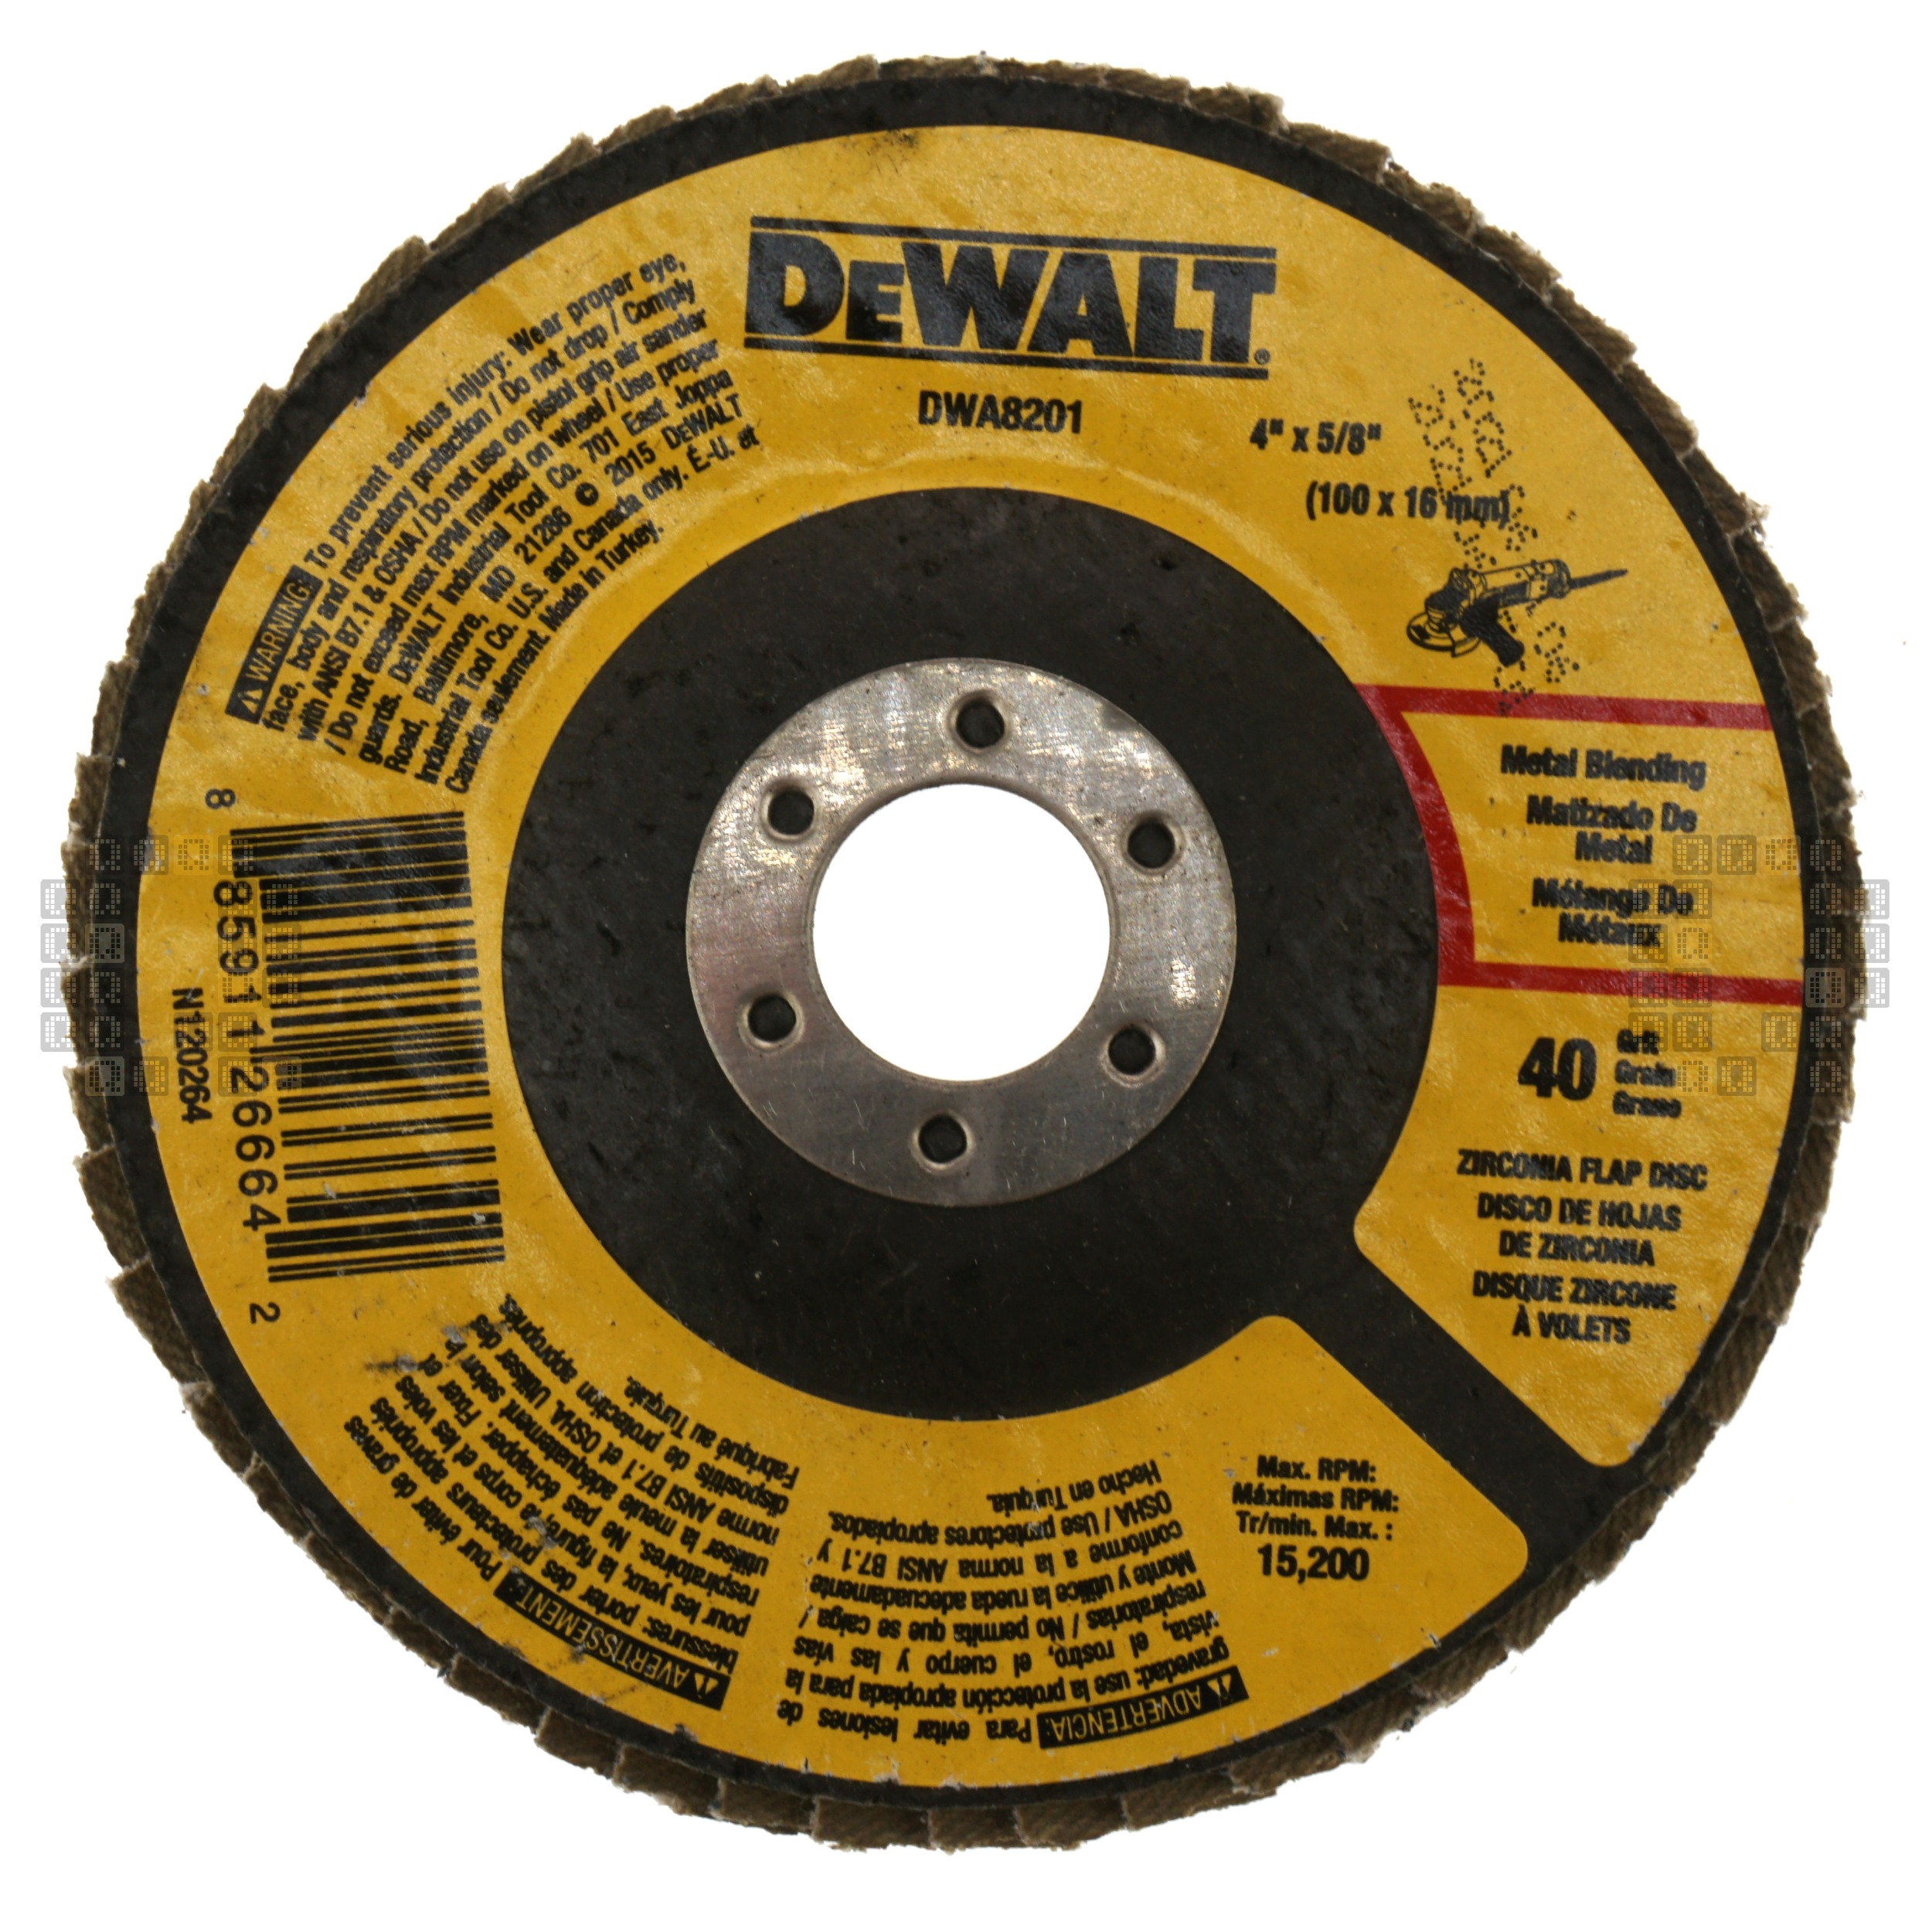 DeWalt DWA8201 4" Zirconia Flap Discs, Metal Blending, 5/8" Arbor, 40 Grit